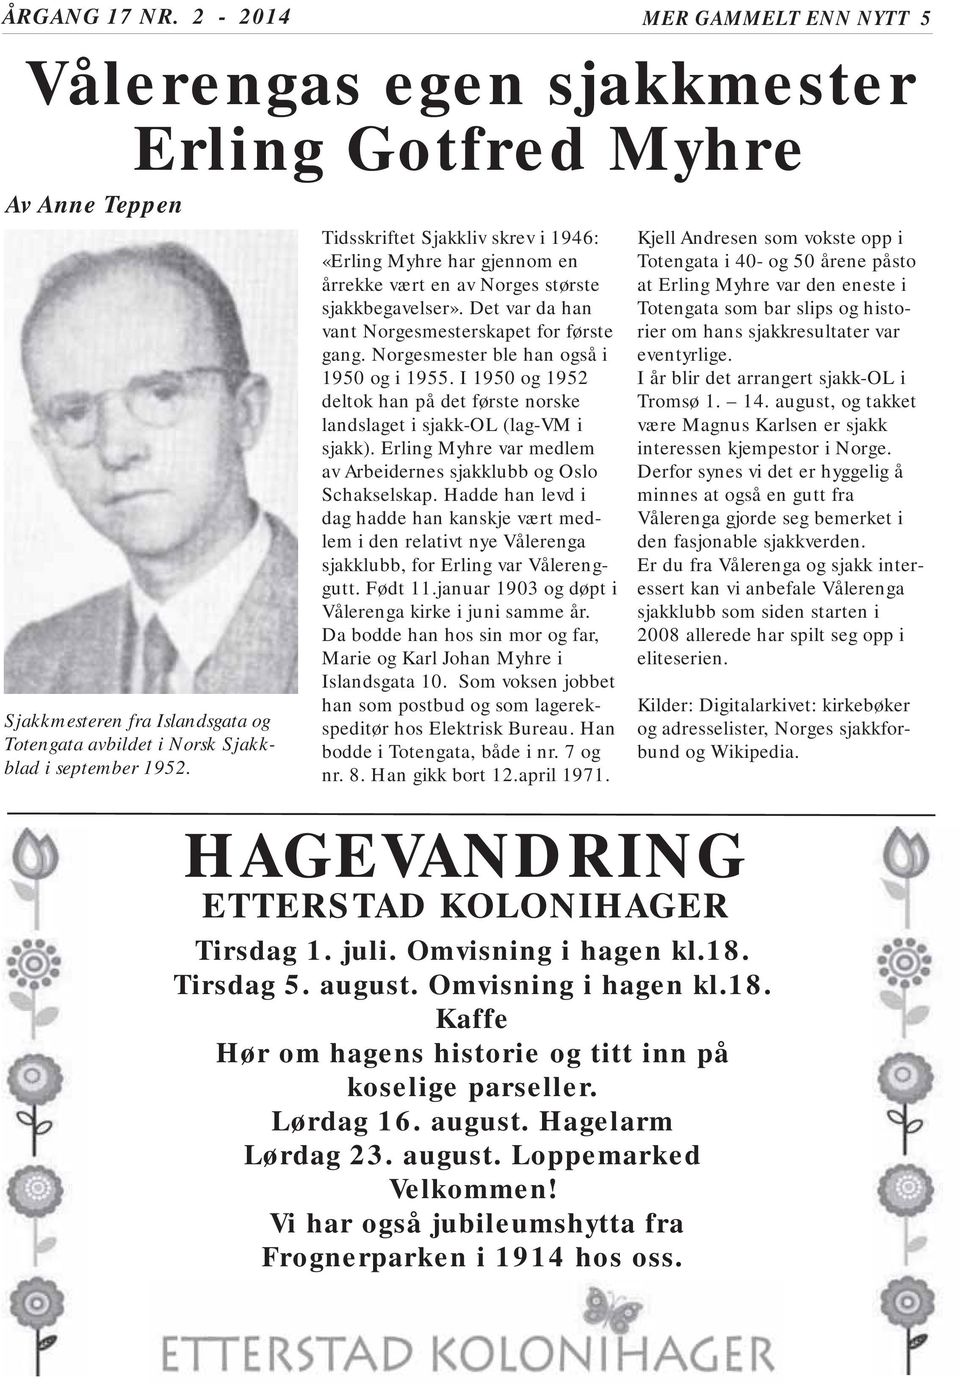 Norgesmester ble han også i 1950 og i 1955. I 1950 og 1952 deltok han på det første norske landslaget i sjakk-ol (lag-vm i sjakk).